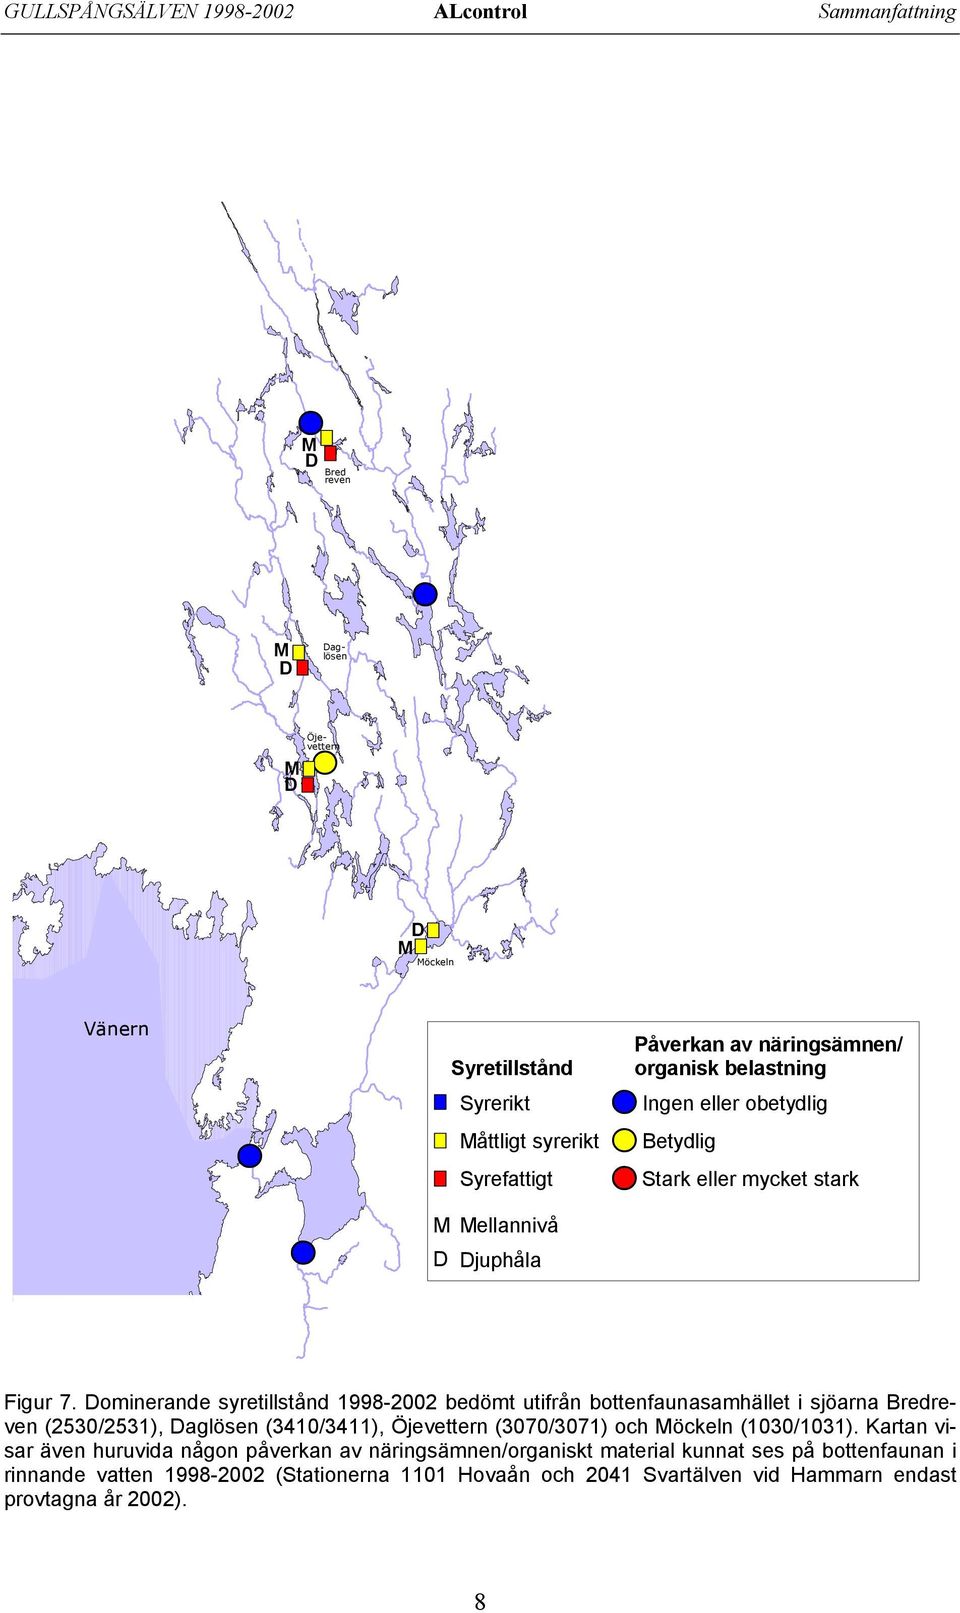 Dominerande syretillstånd 1998-22 bedömt utifrån bottenfaunasamhället i sjöarna Bredreven (253/2531), Daglösen (341/3411), Öjevettern (37/371) och Möckeln (13/131).